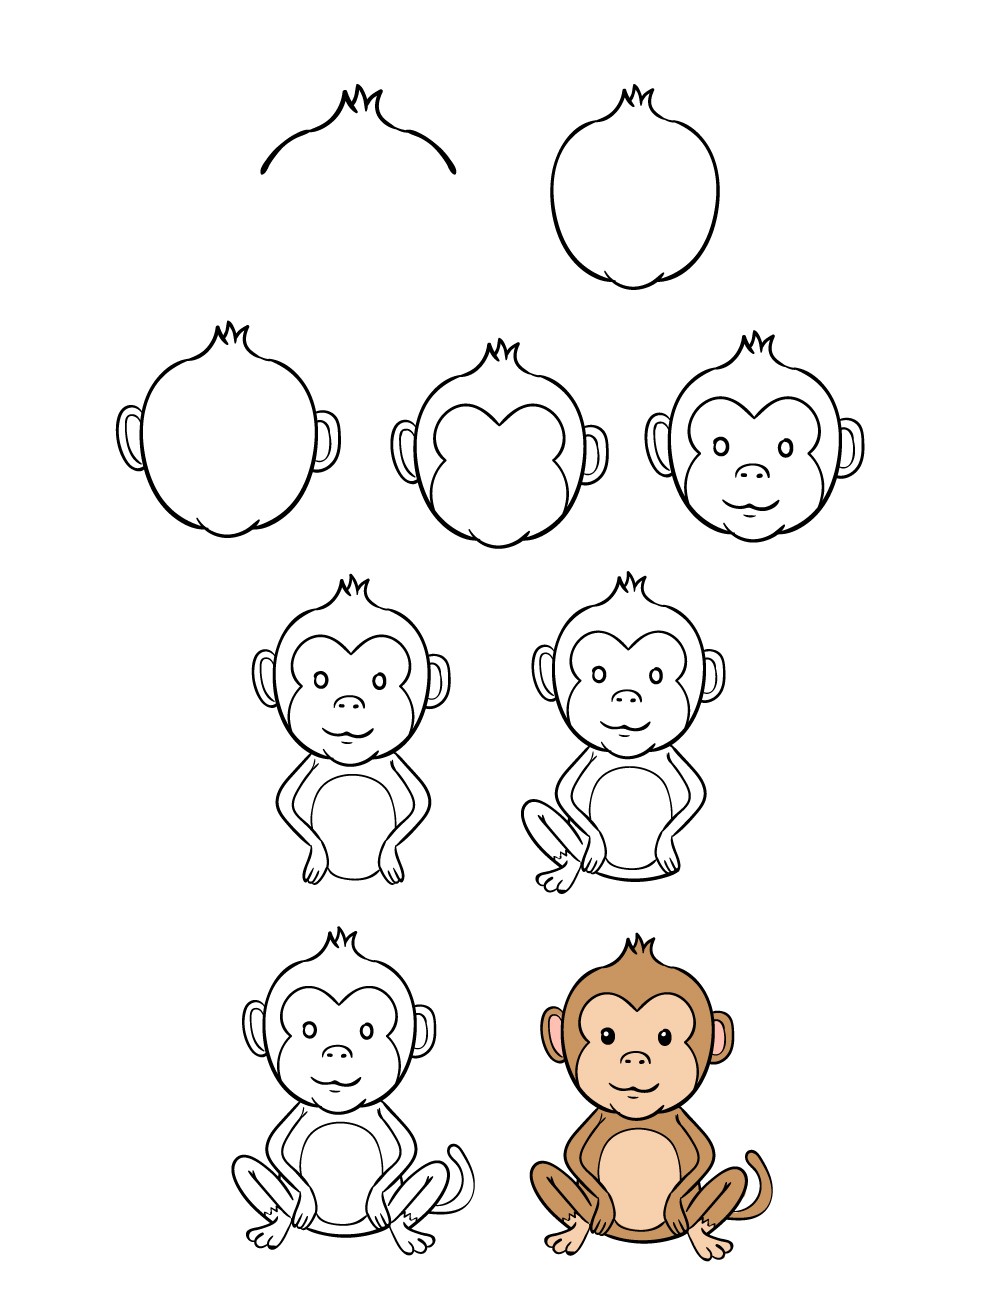 Vẽ con Khỉ đơn giản tương đương với việc tạo ra một tác phẩm nghệ thuật độc đáo và đầy sáng tạo. Với hình ảnh con Khỉ đáng yêu, bạn có thể bắt đầu thực hiện bức tranh của riêng mình và khám phá khả năng sáng tạo của mình. Xem ngay hình ảnh liên quan để lấy cảm hứng cho tác phẩm của bạn!